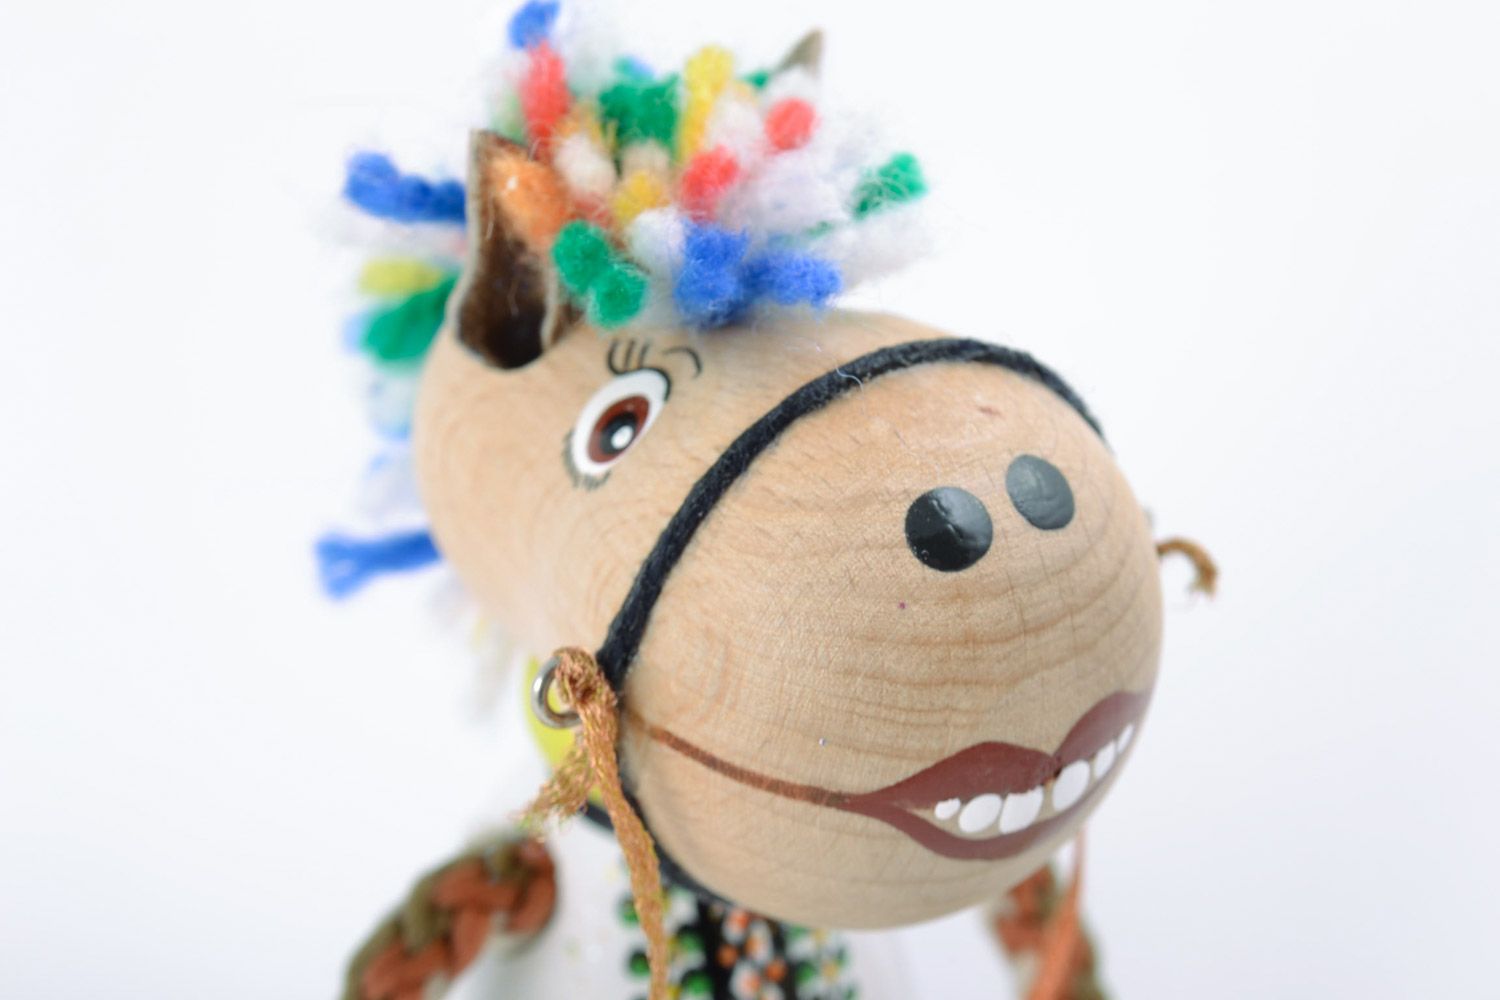 Смешная игрушка из дерева в виде лошадки ручной работы расписанная эко красками фото 3